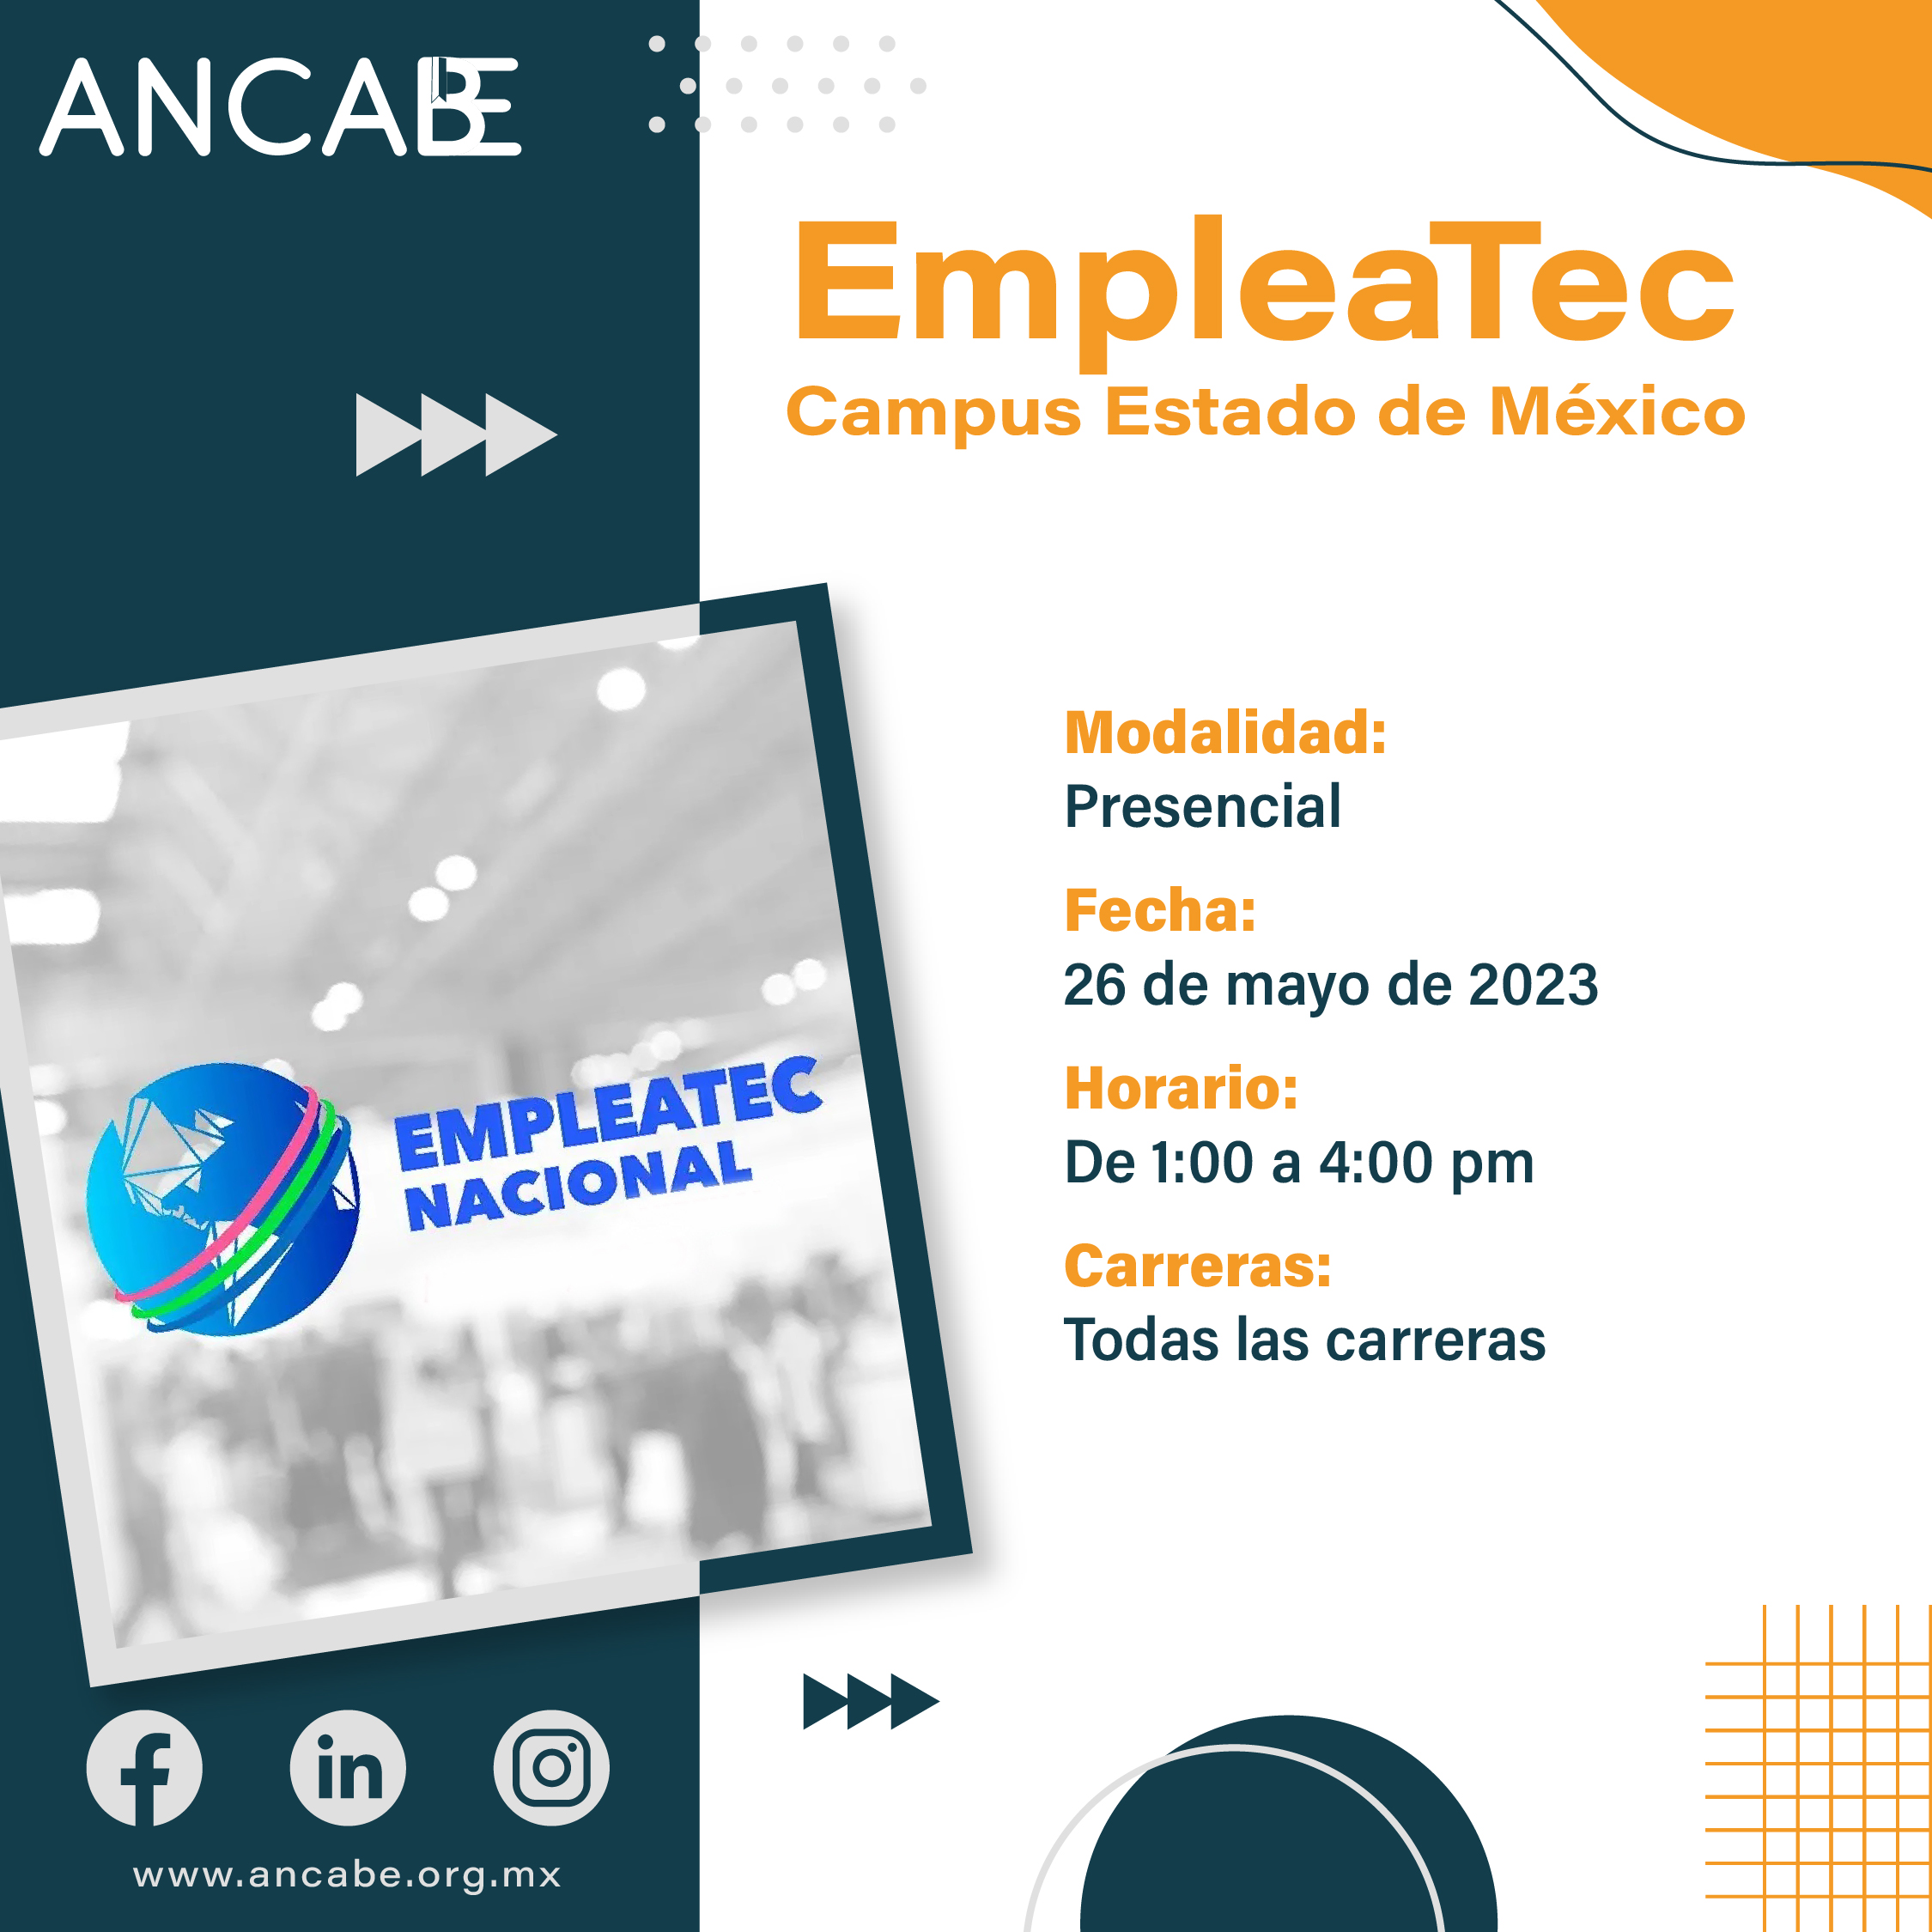 EmpleaTec campus Estado de México